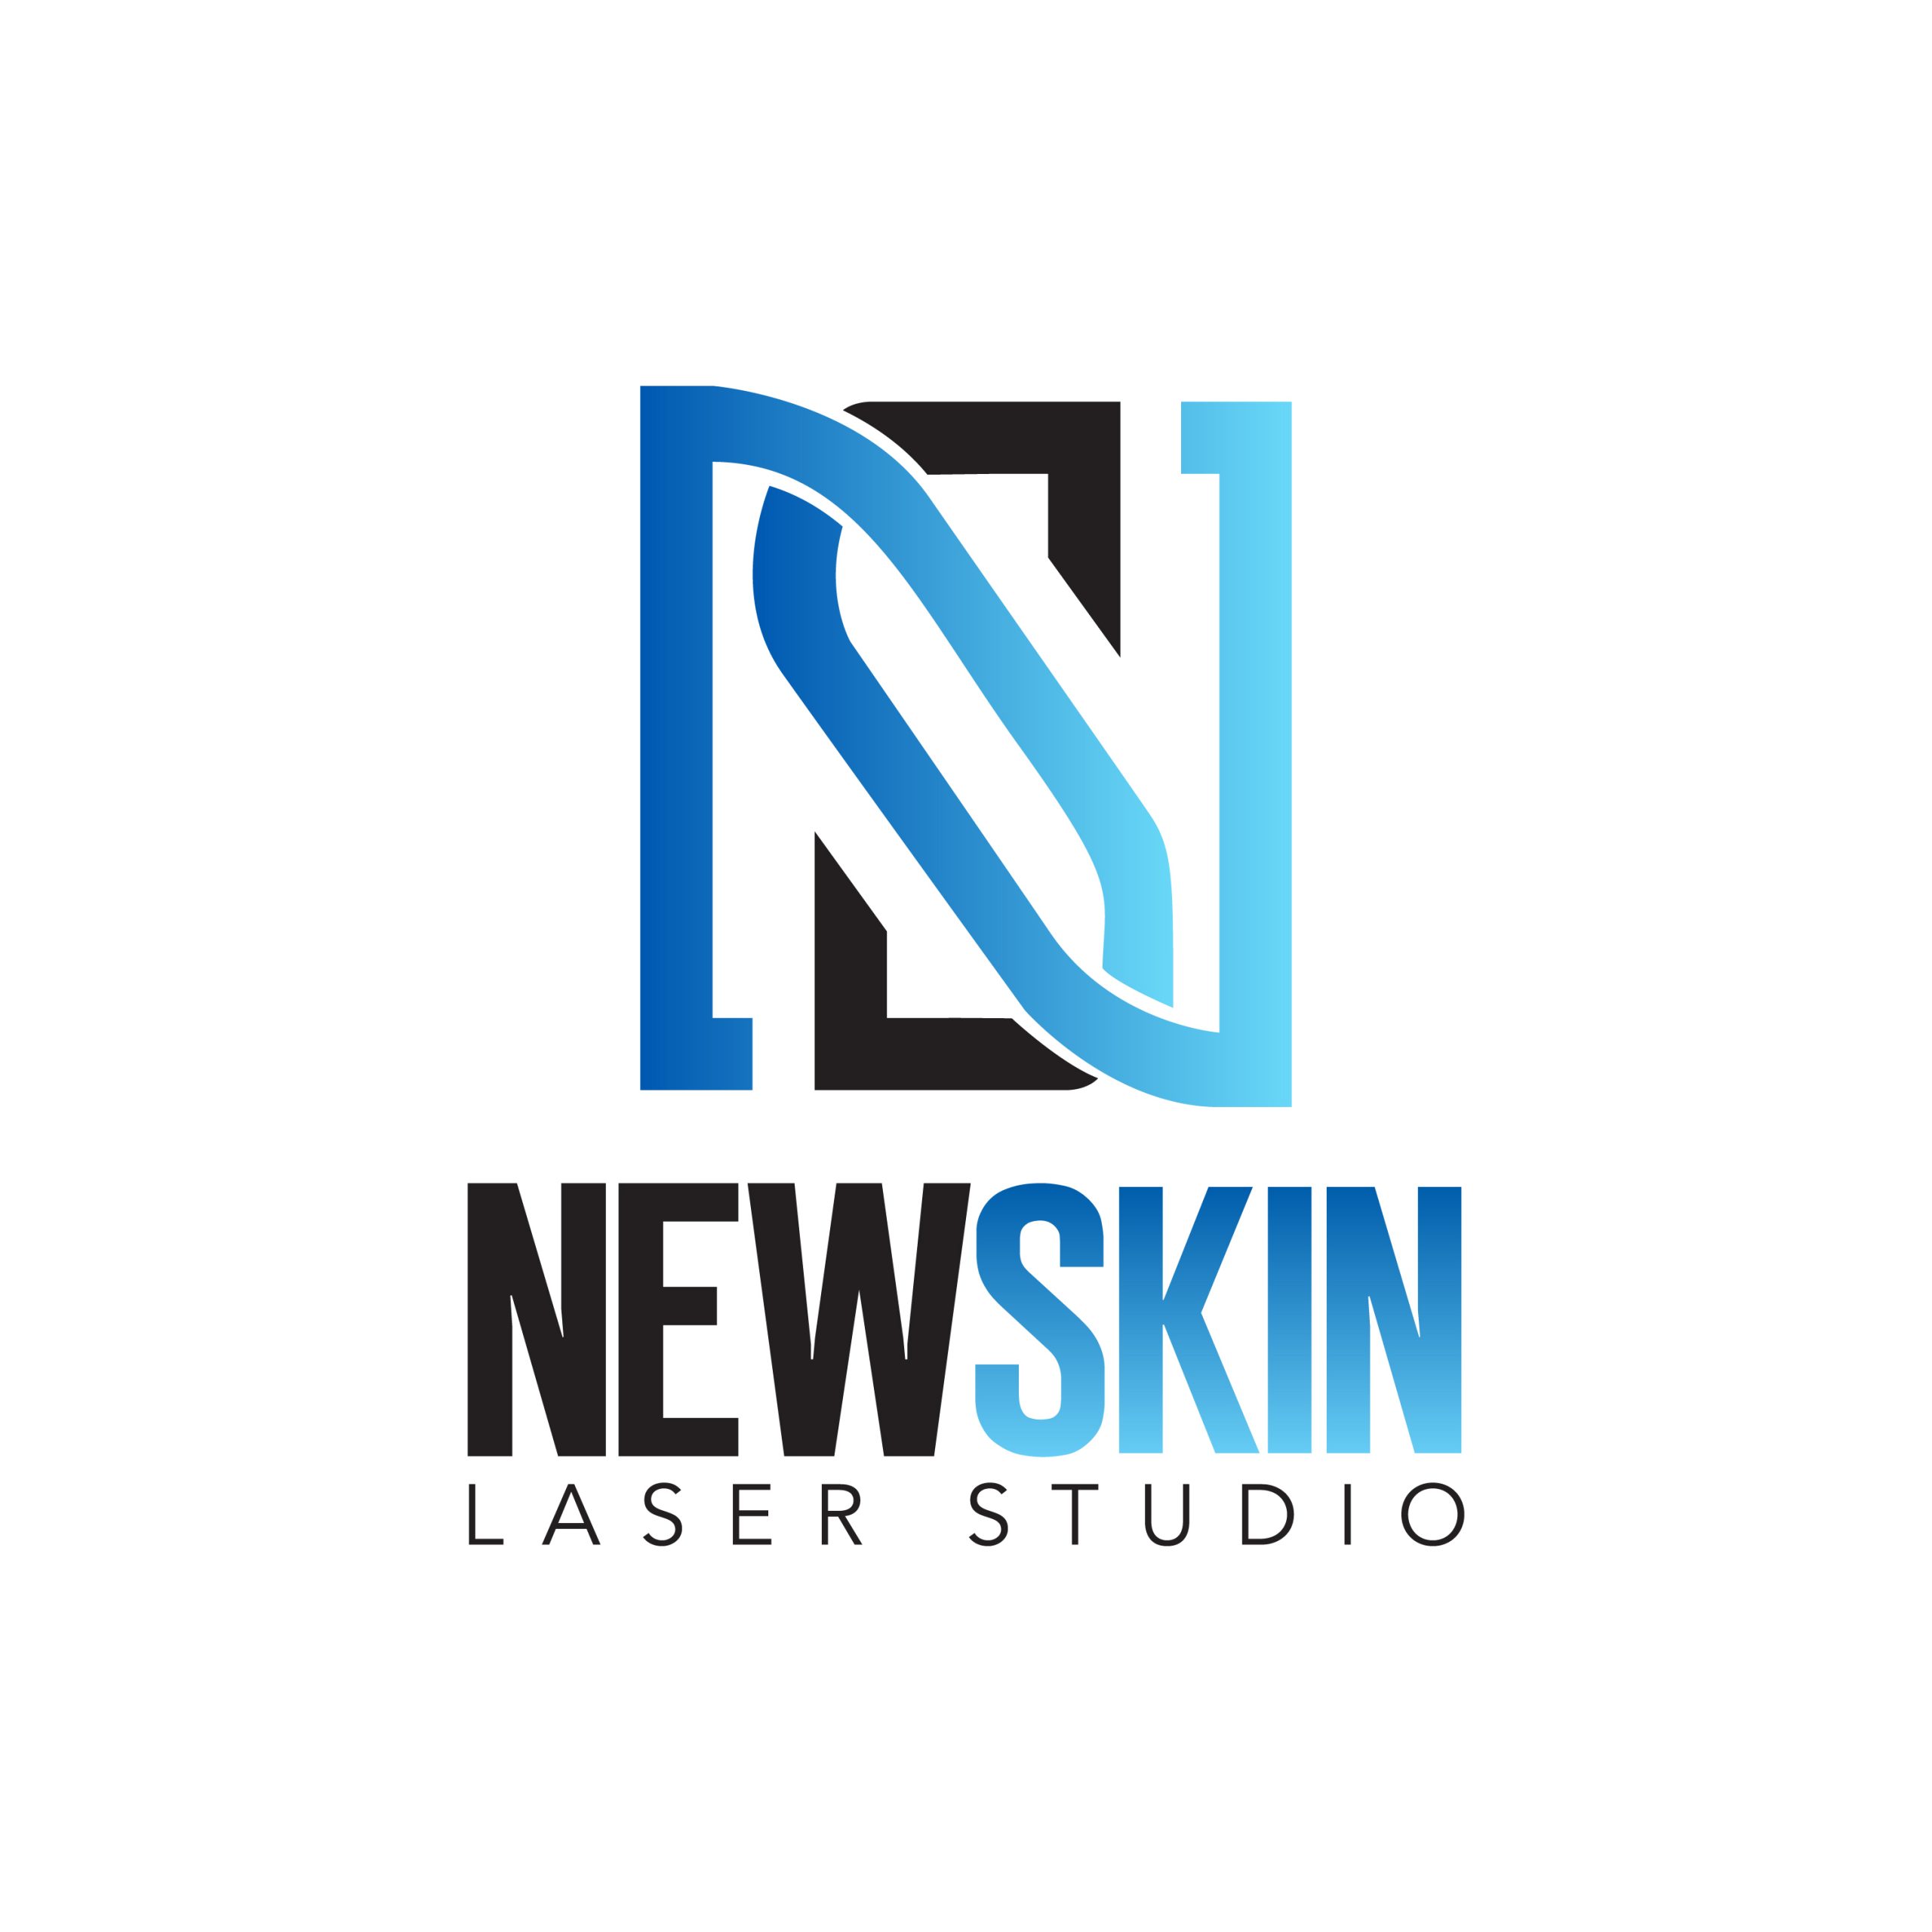 new skin laser studio logo